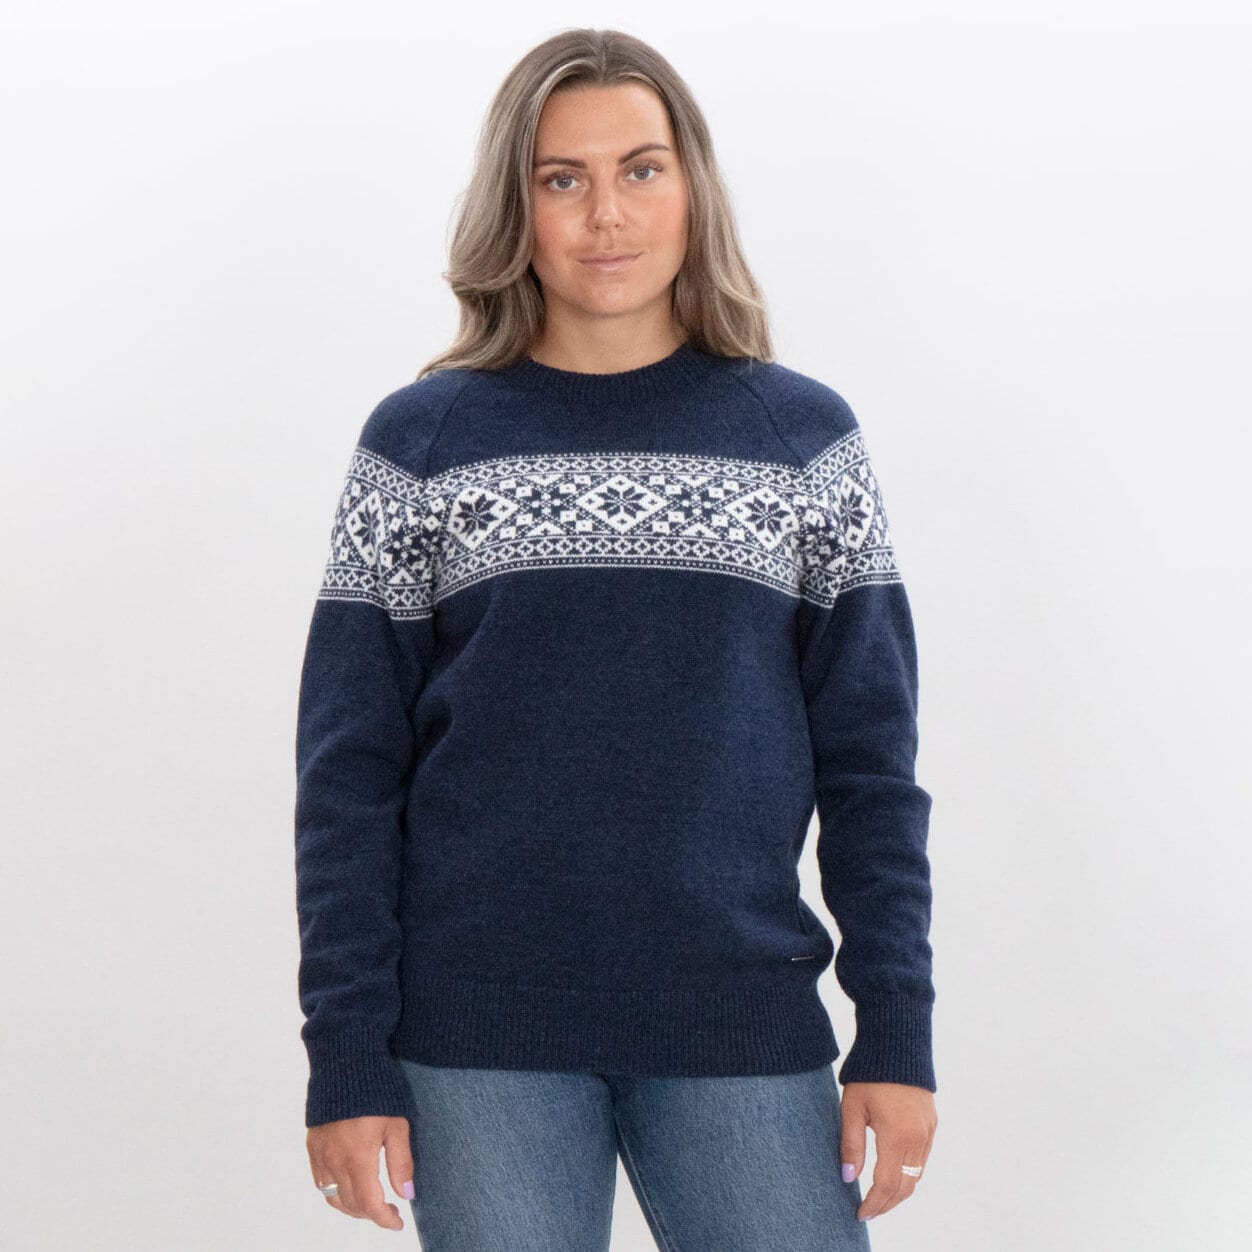 Grace sweater